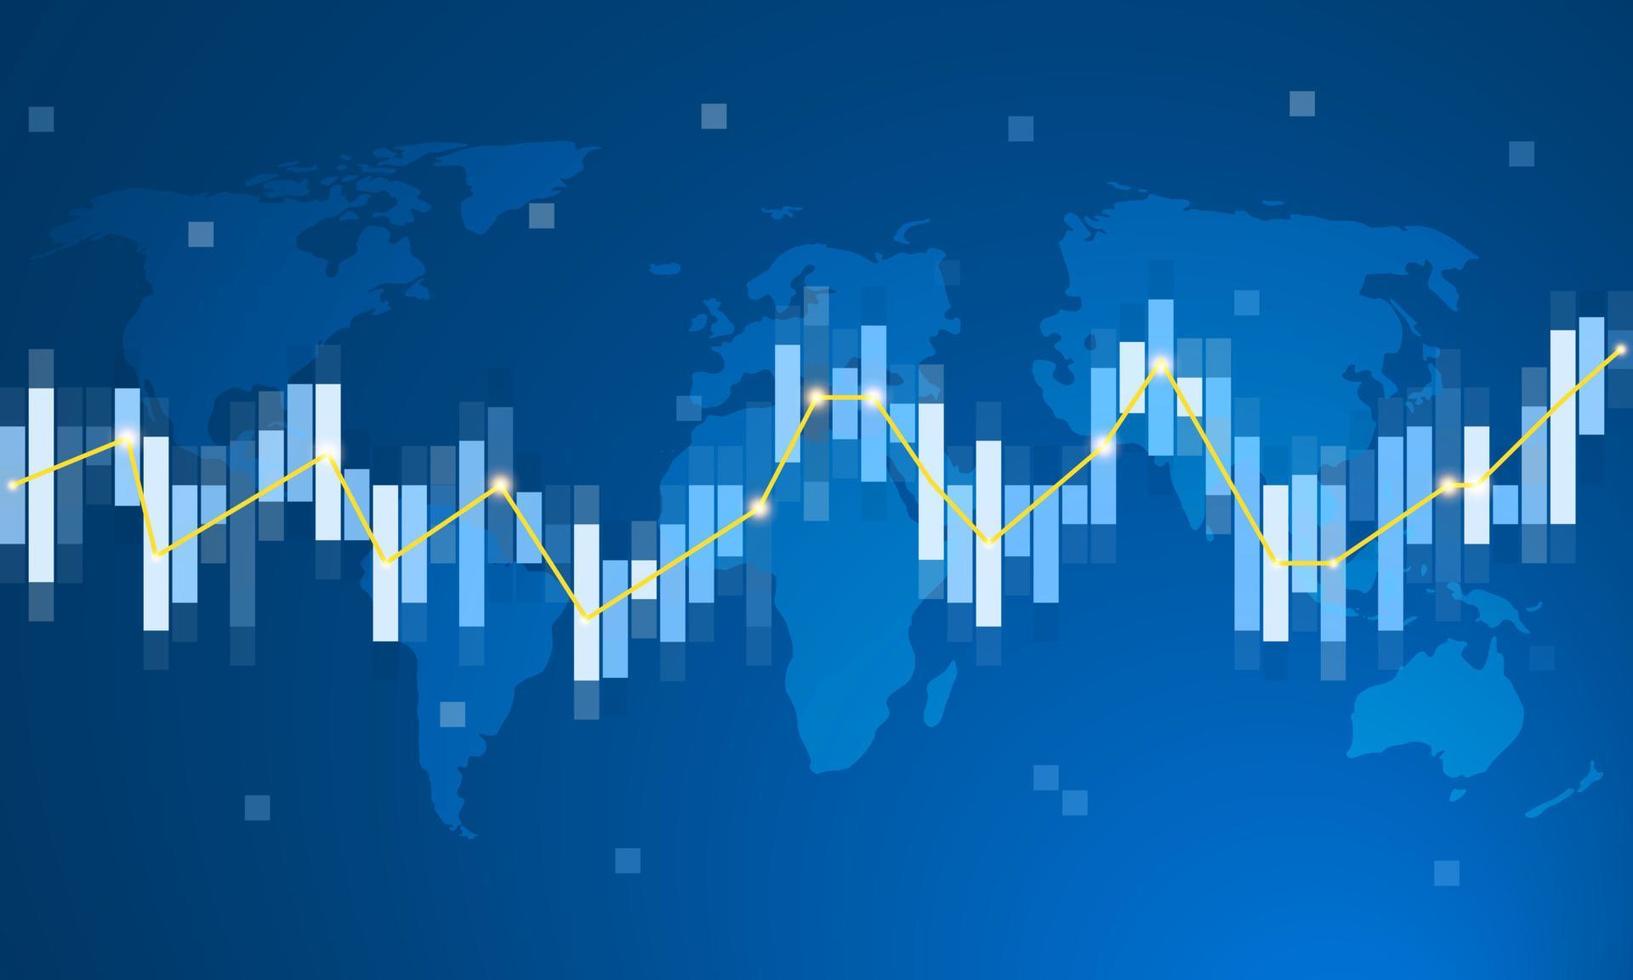 världskarta med finansiella data grafdiagram på blå bakgrund. vektor